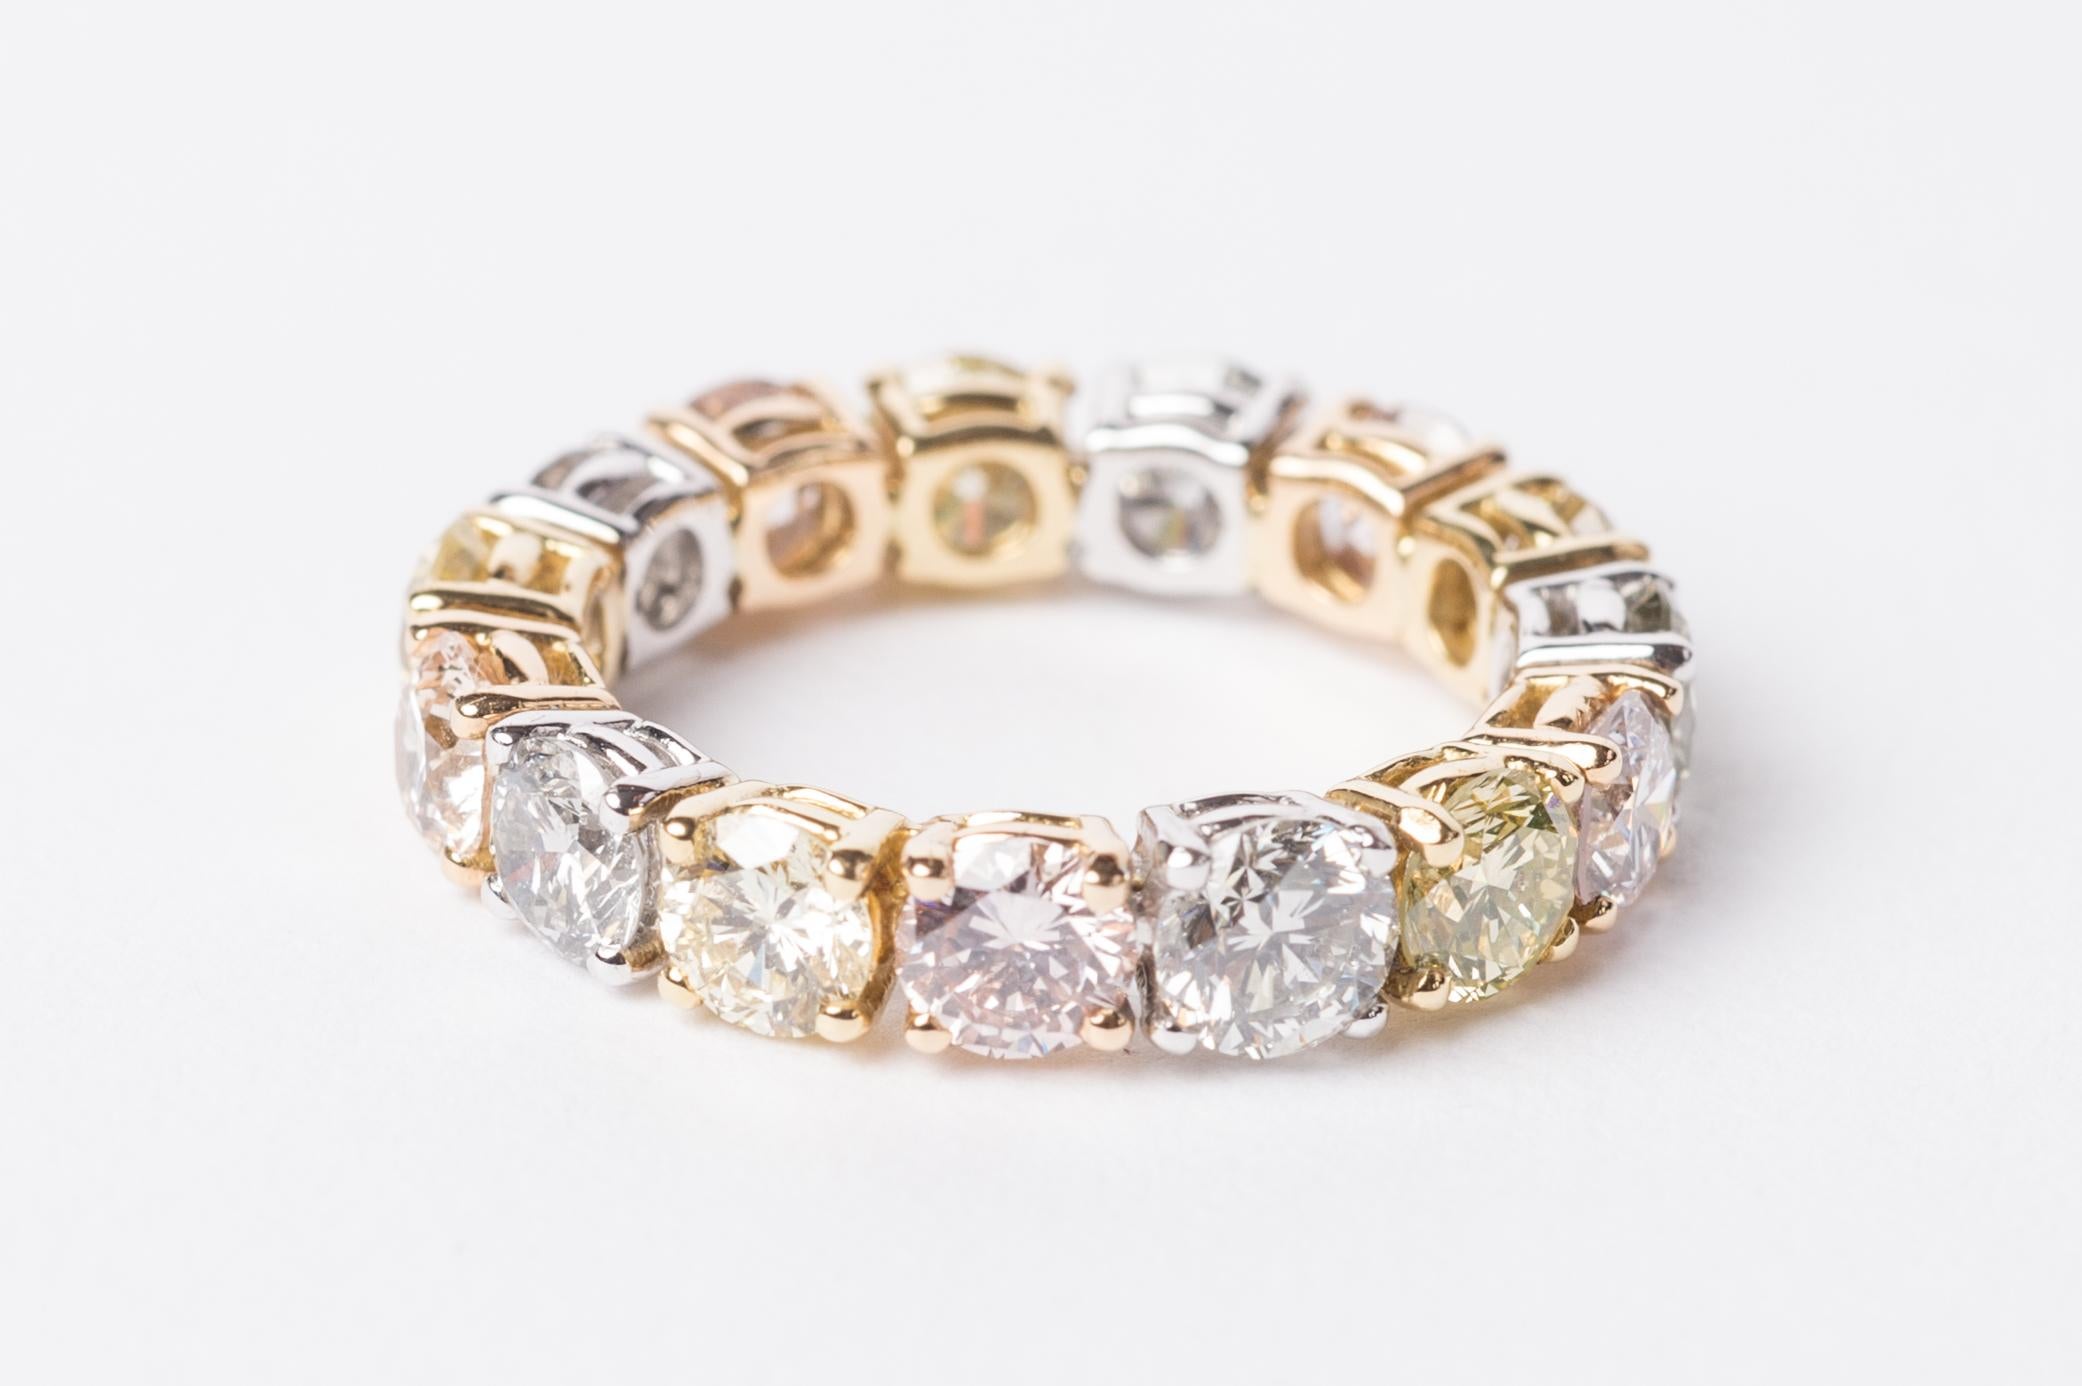 Ein klassischer Ring für die Ewigkeit mit einer besonderen Note - dieses schöne Stück ist wirklich etwas Besonderes. Dieser Ring kombiniert auffällige Diamanten aus dem Haruni-Tresor mit rosa, gelben und grauen Steinen, die sich gegenseitig perfekt